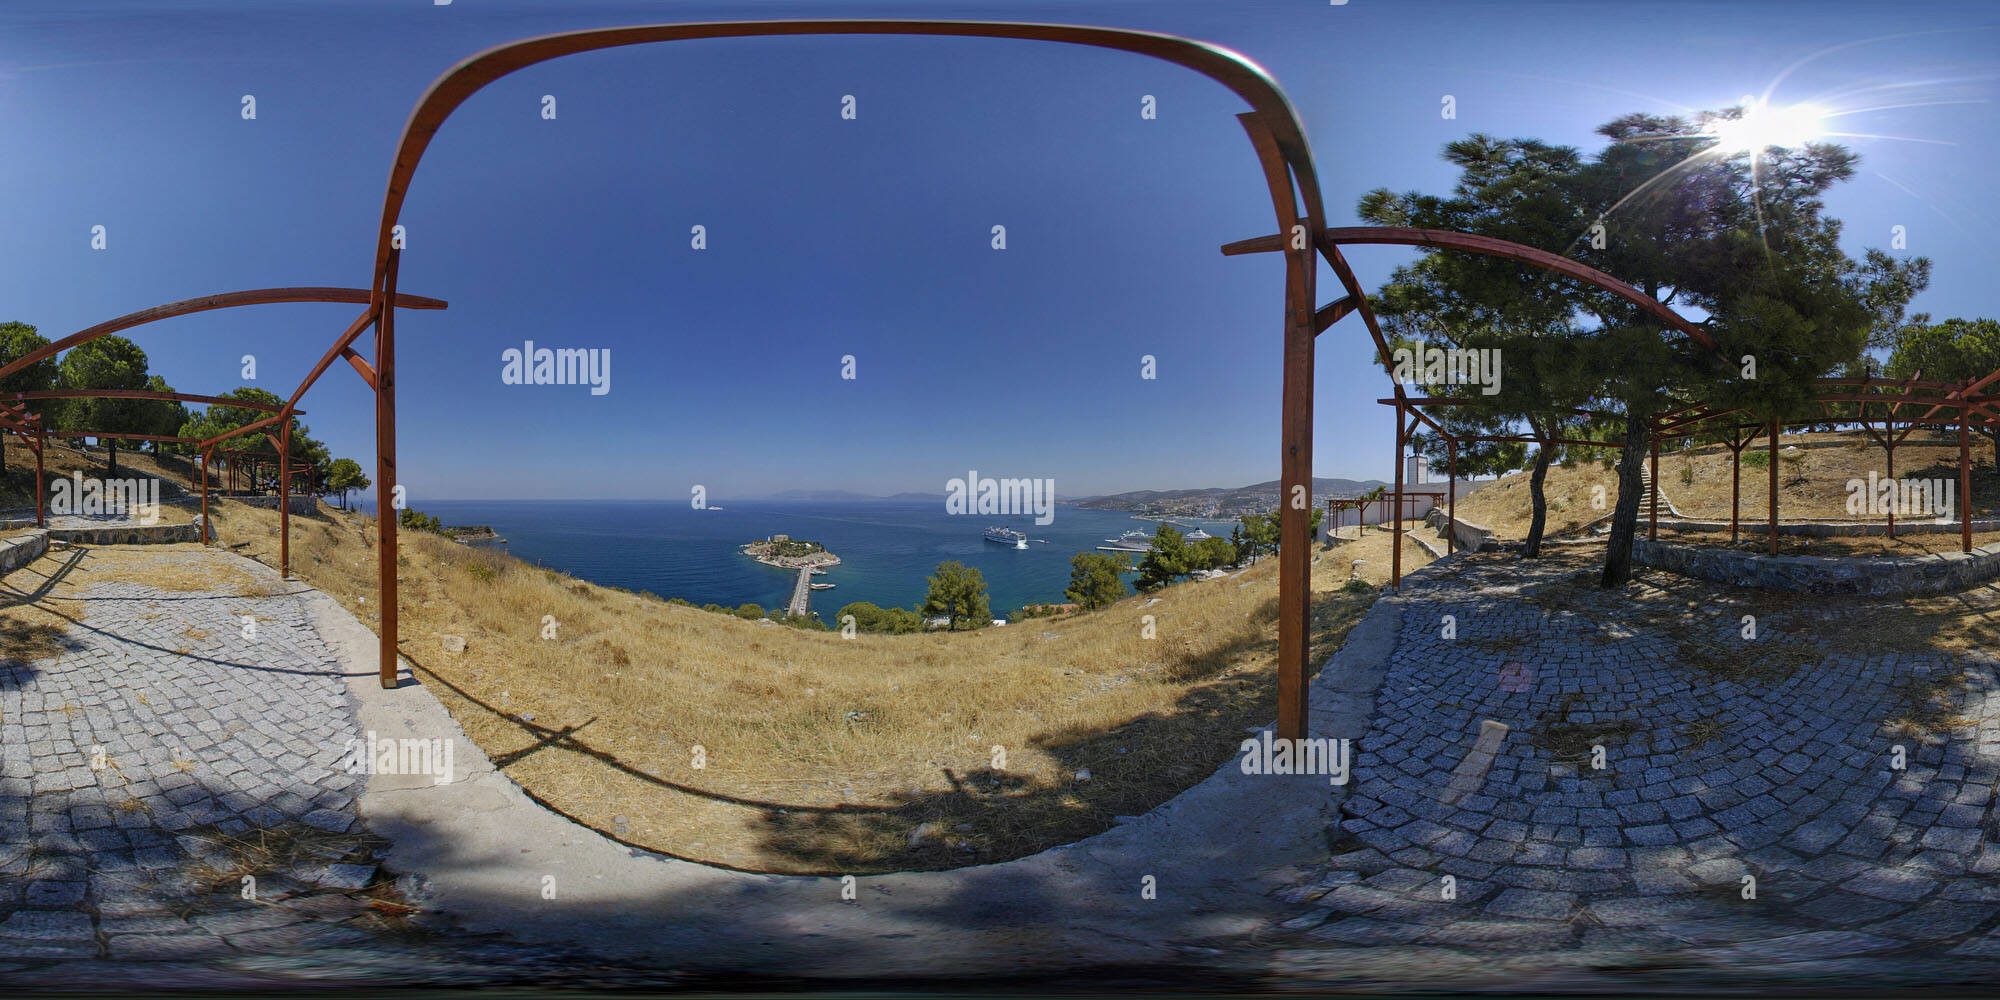 360 degree panoramic view of The Atatuerk Monument